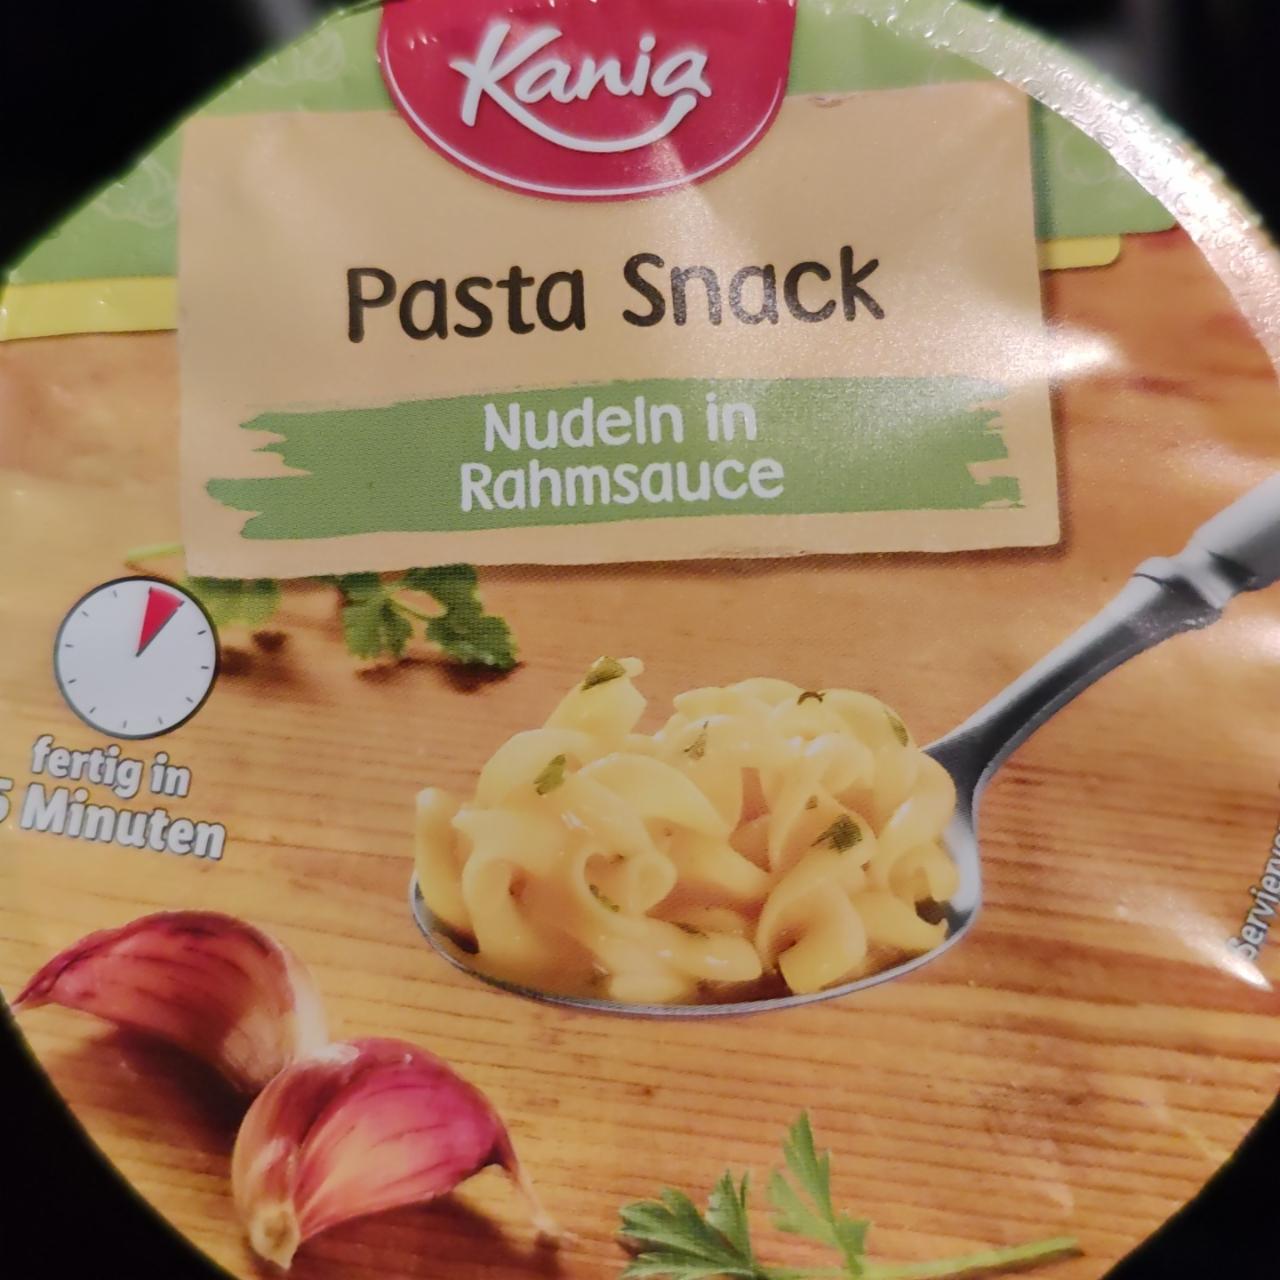 Fotografie - pasta snack nudeln in rahmsauce Kania